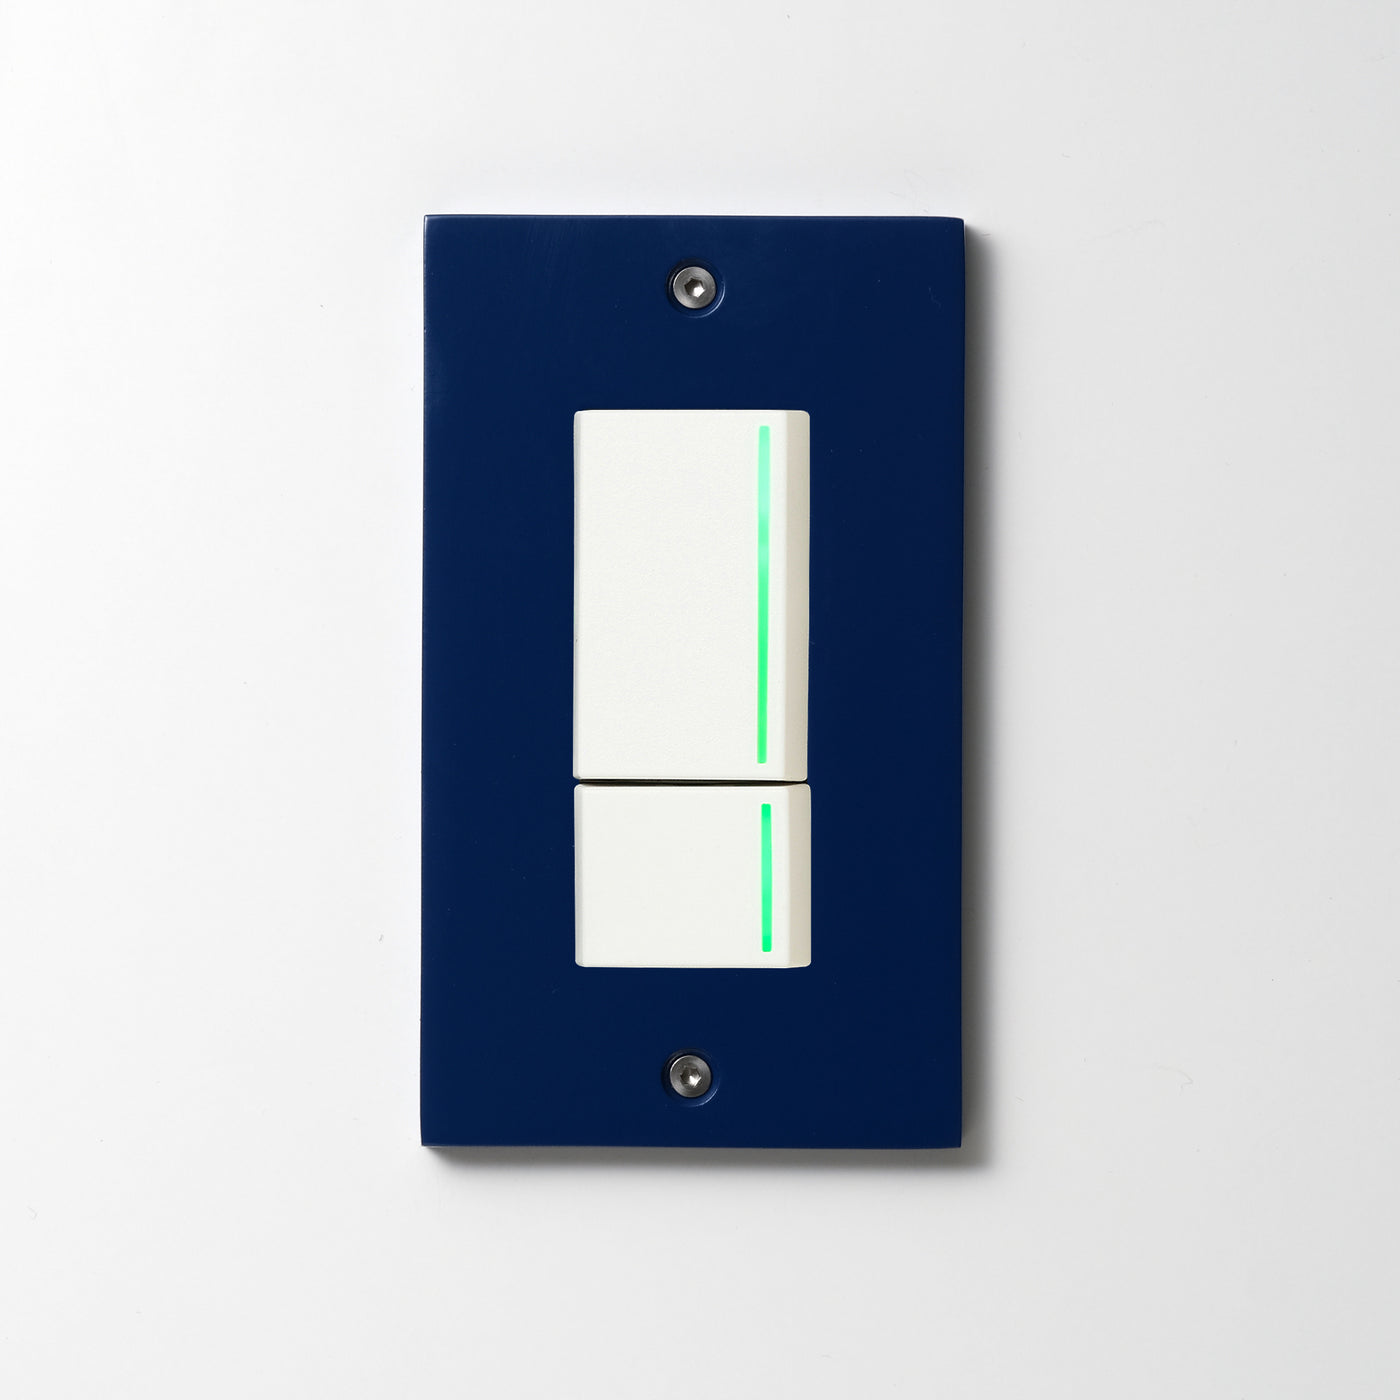 アルミ ブルー塗装 プレート  <br>+ NK 片切、3路ガイドランプ（グリーン）スイッチダブル（上段大）  ホワイト